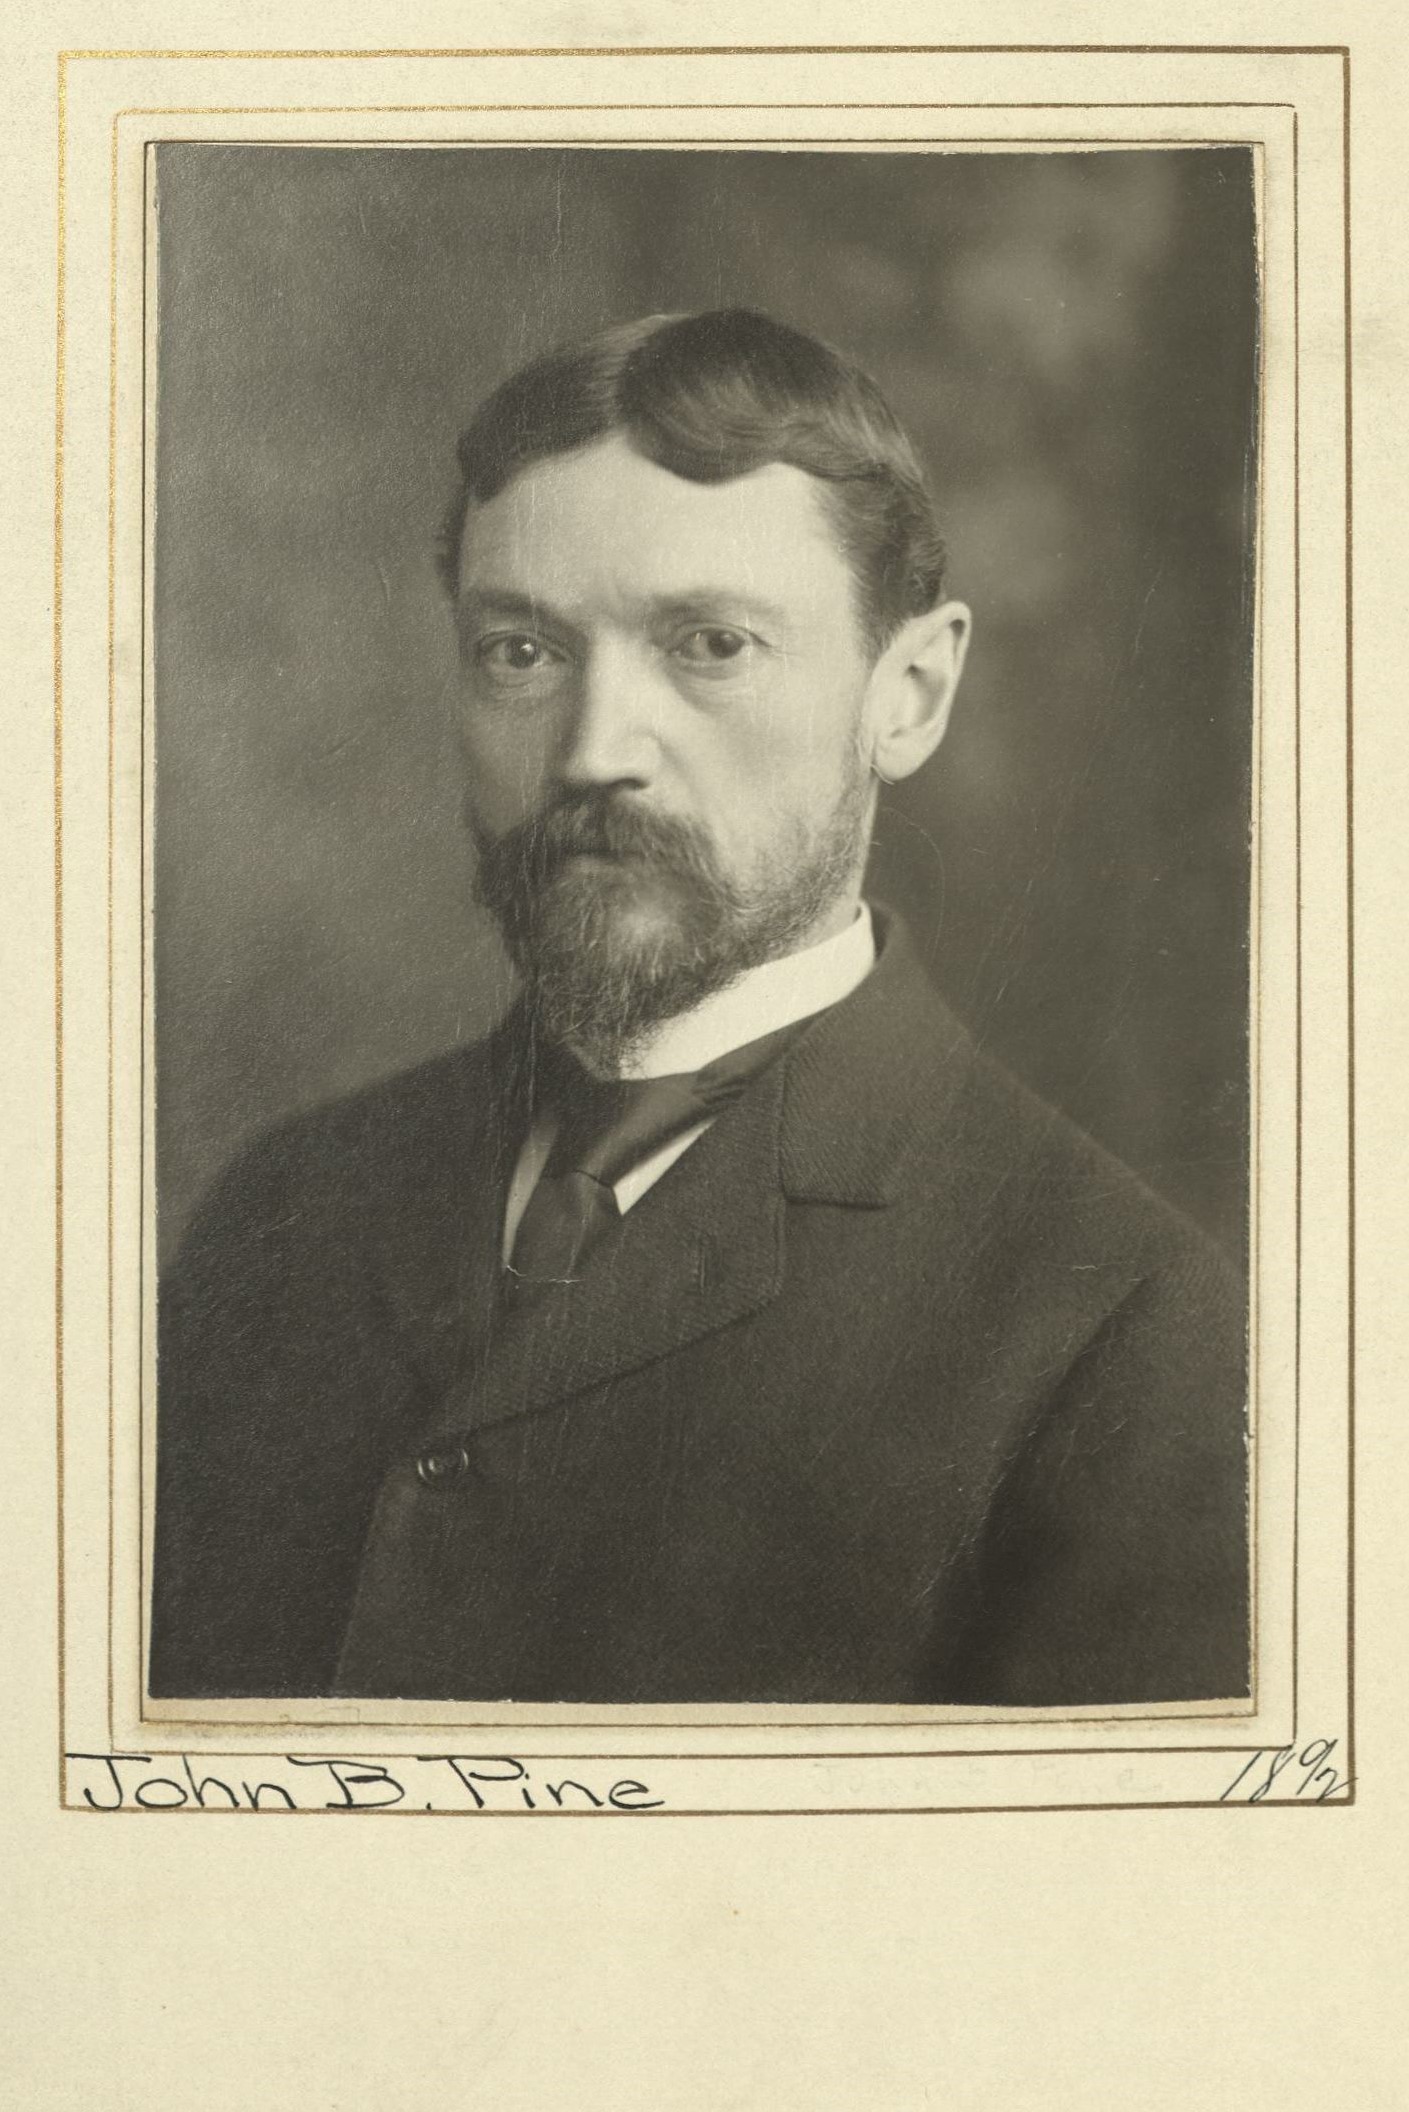 Member portrait of John B. Pine